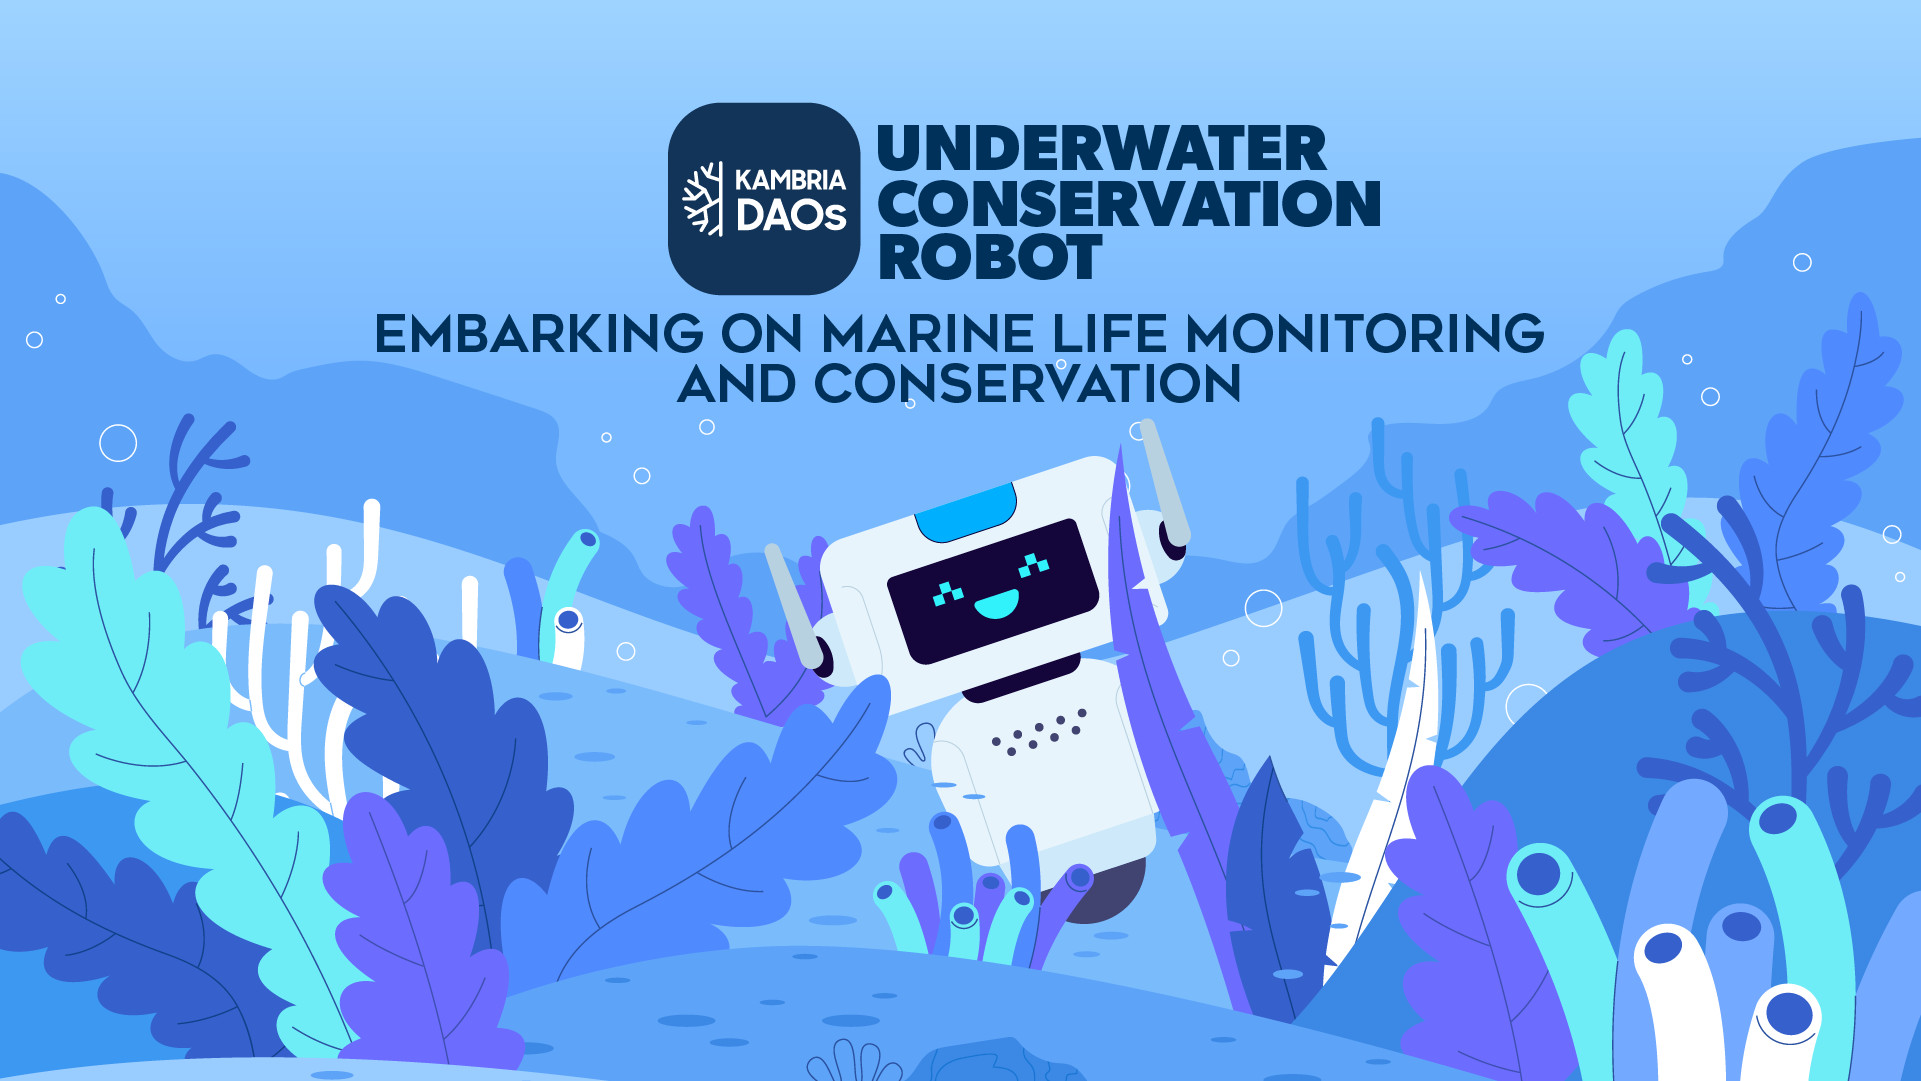 Kambria Underwater Conservation Robot DAO